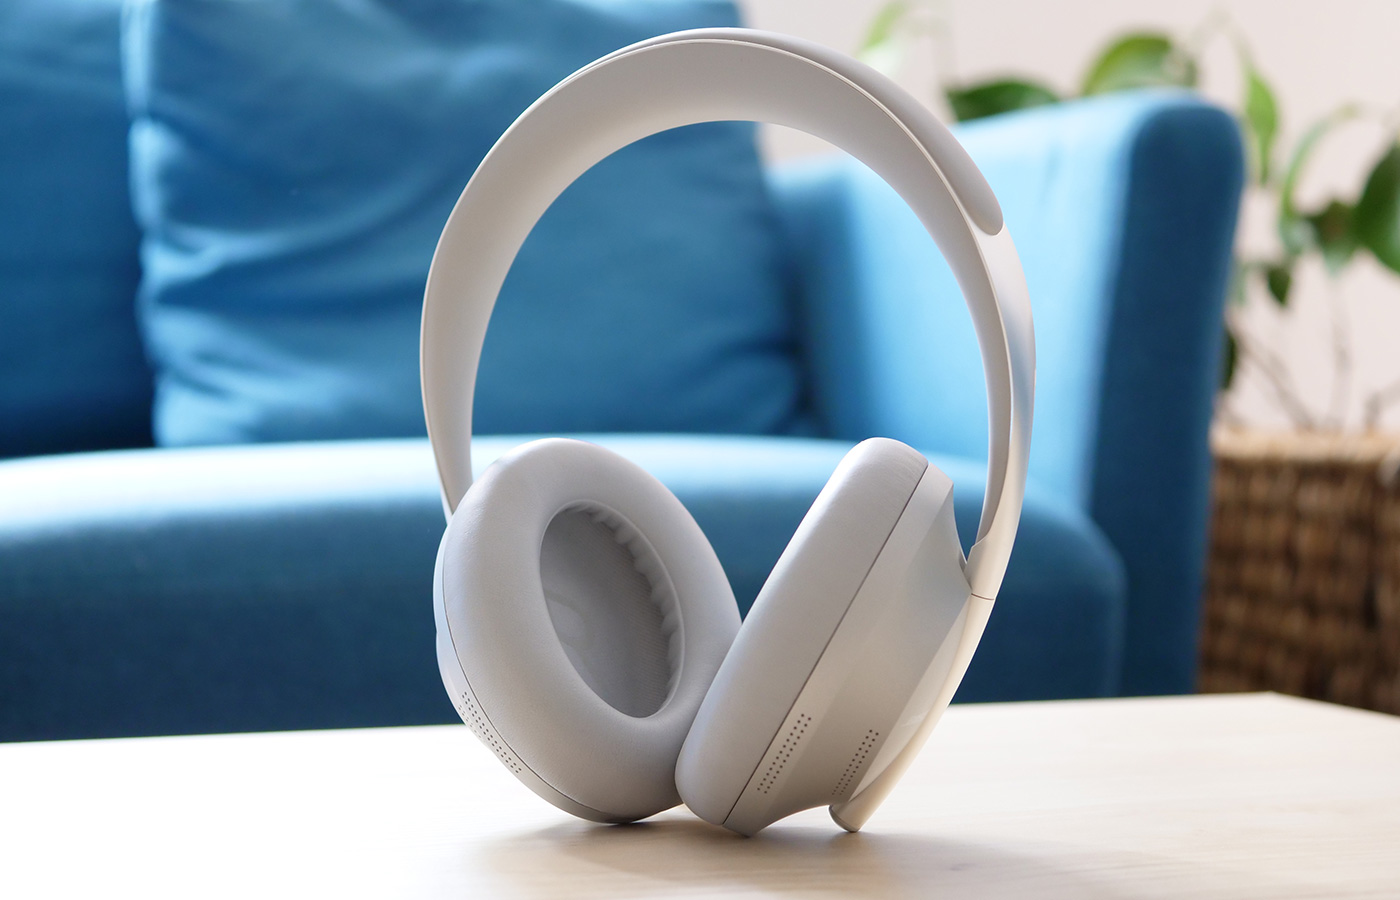 Bose Noise Cancelling Headphones 700 Soapstone - Casque sans fil - Casque  Audio Bose sur